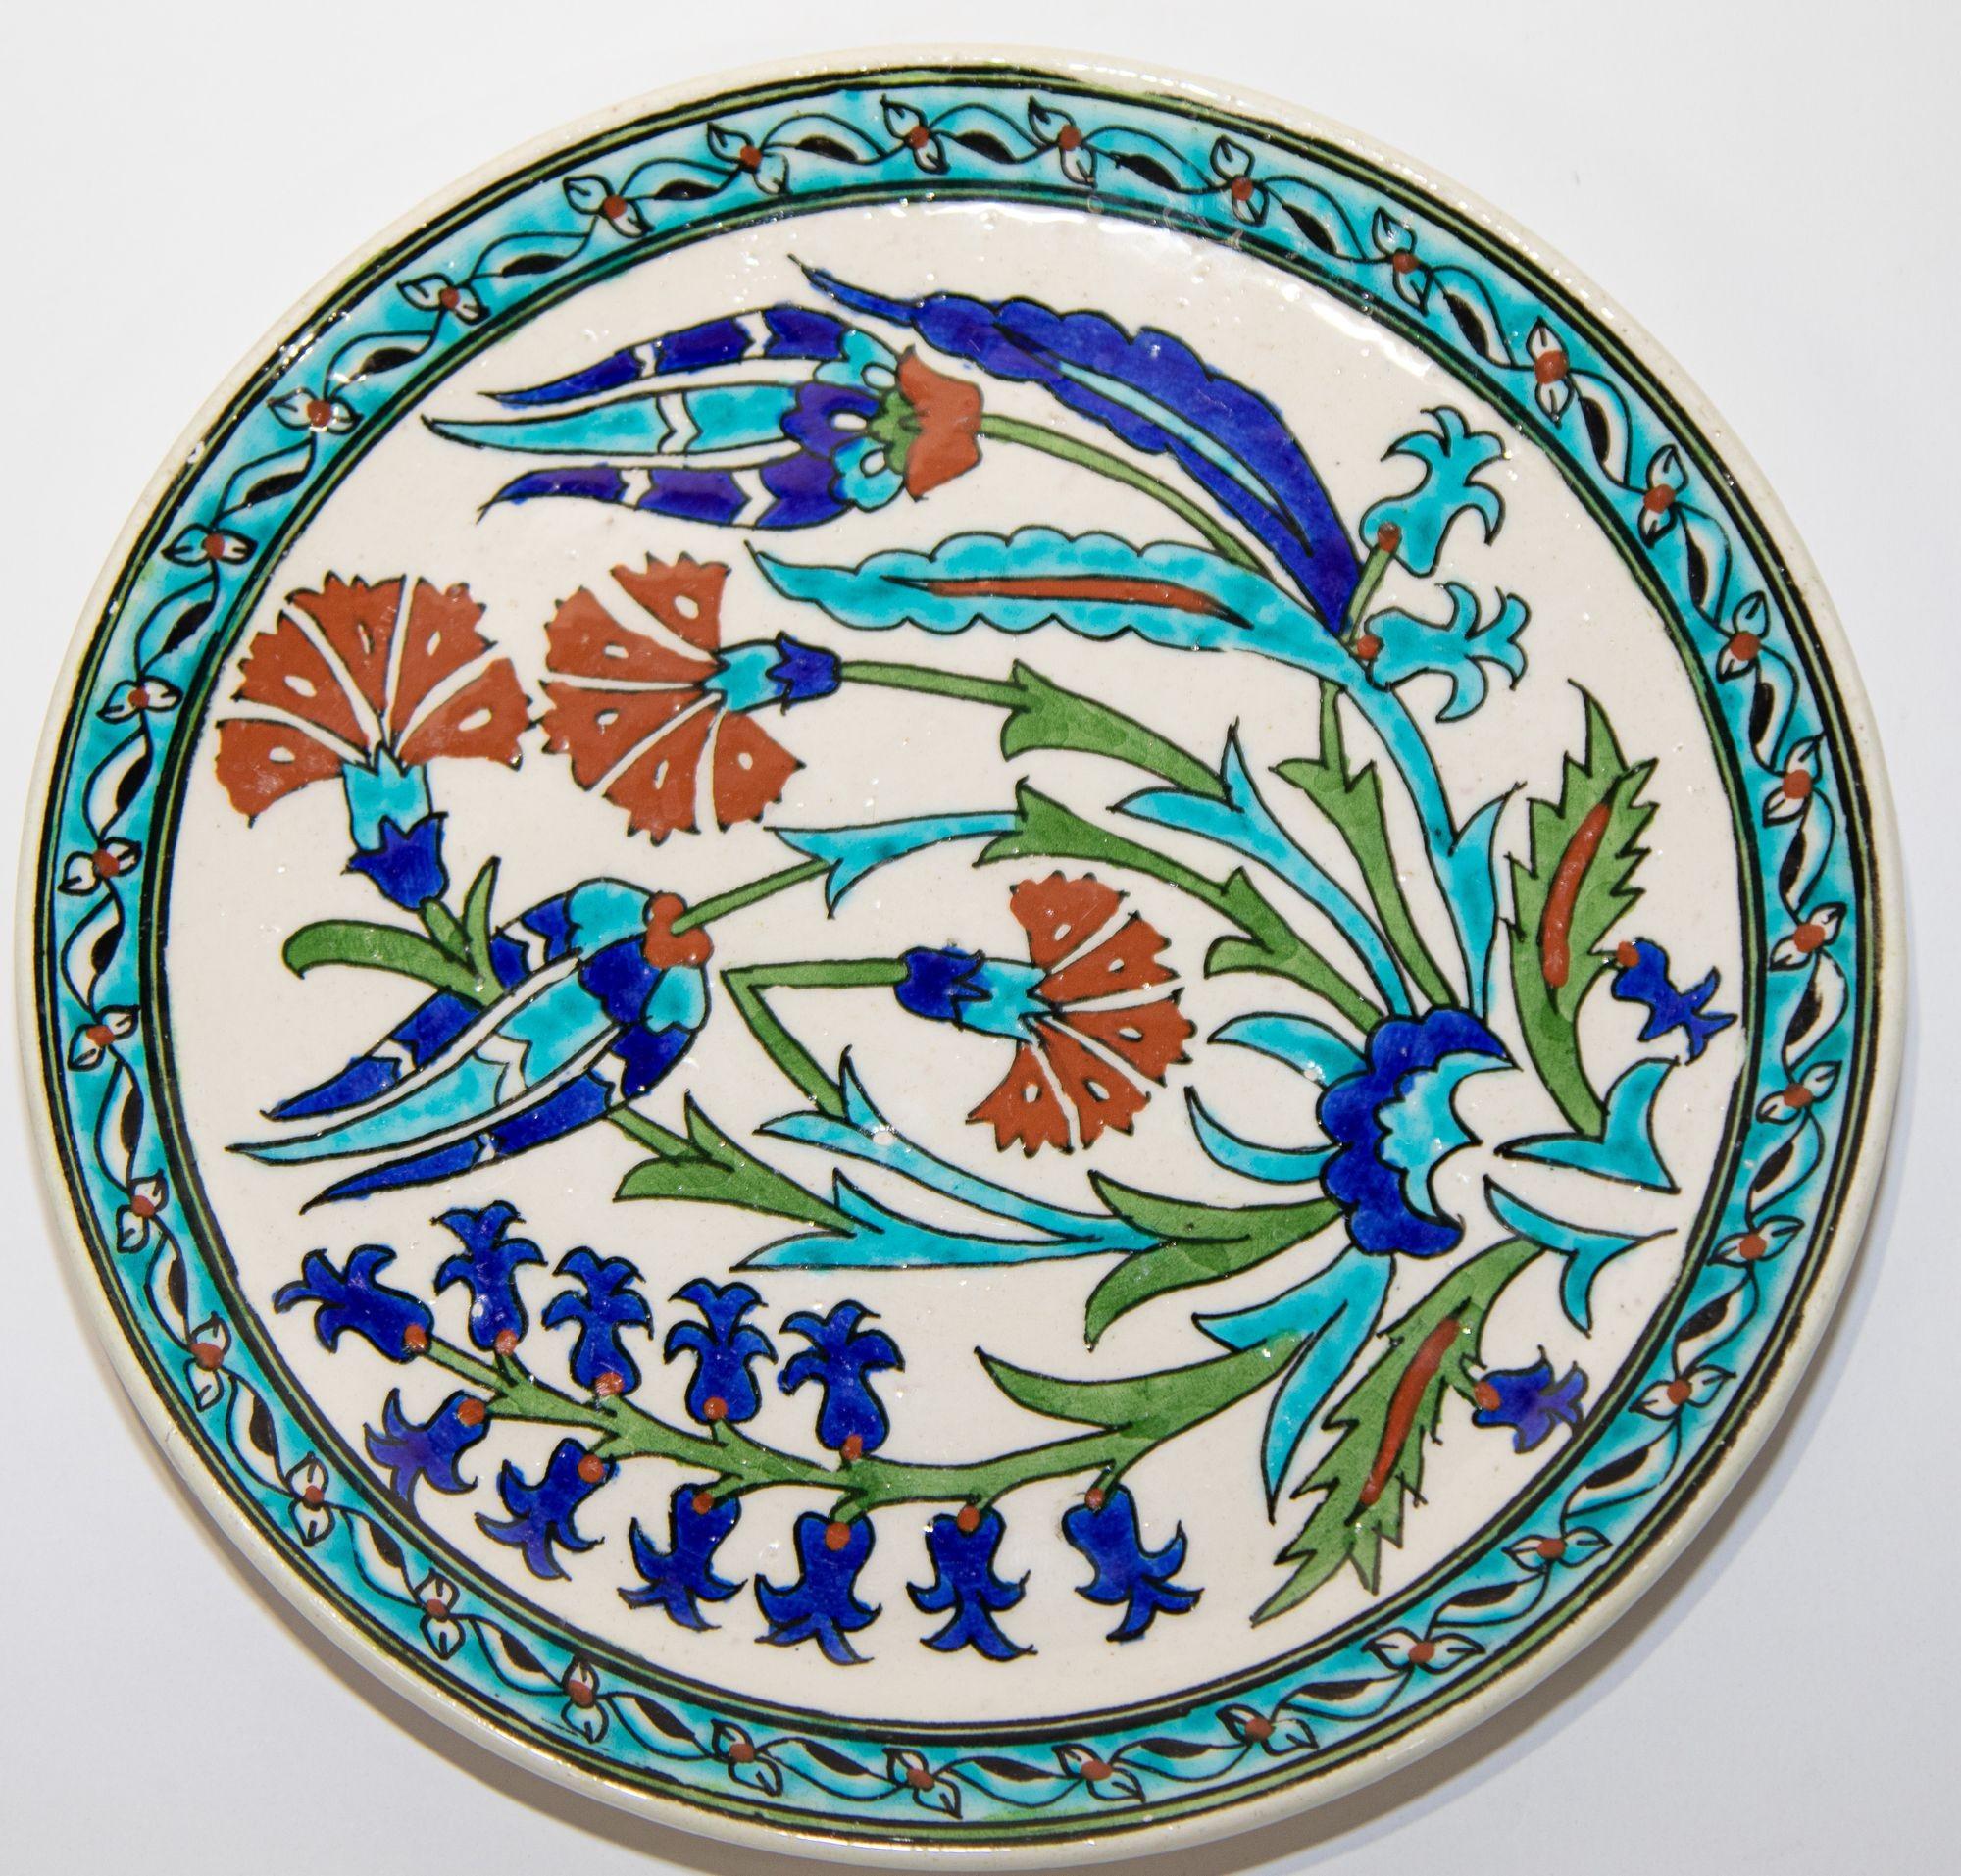 Assiette décorative turque Kutahya en céramique polychrome peinte à la main.
Kütahya est célèbre pour ses produits de four, comme les tuiles et les poteries, qui sont émaillés et multicolores.
Il est orné de magnifiques fleurs peintes à la main